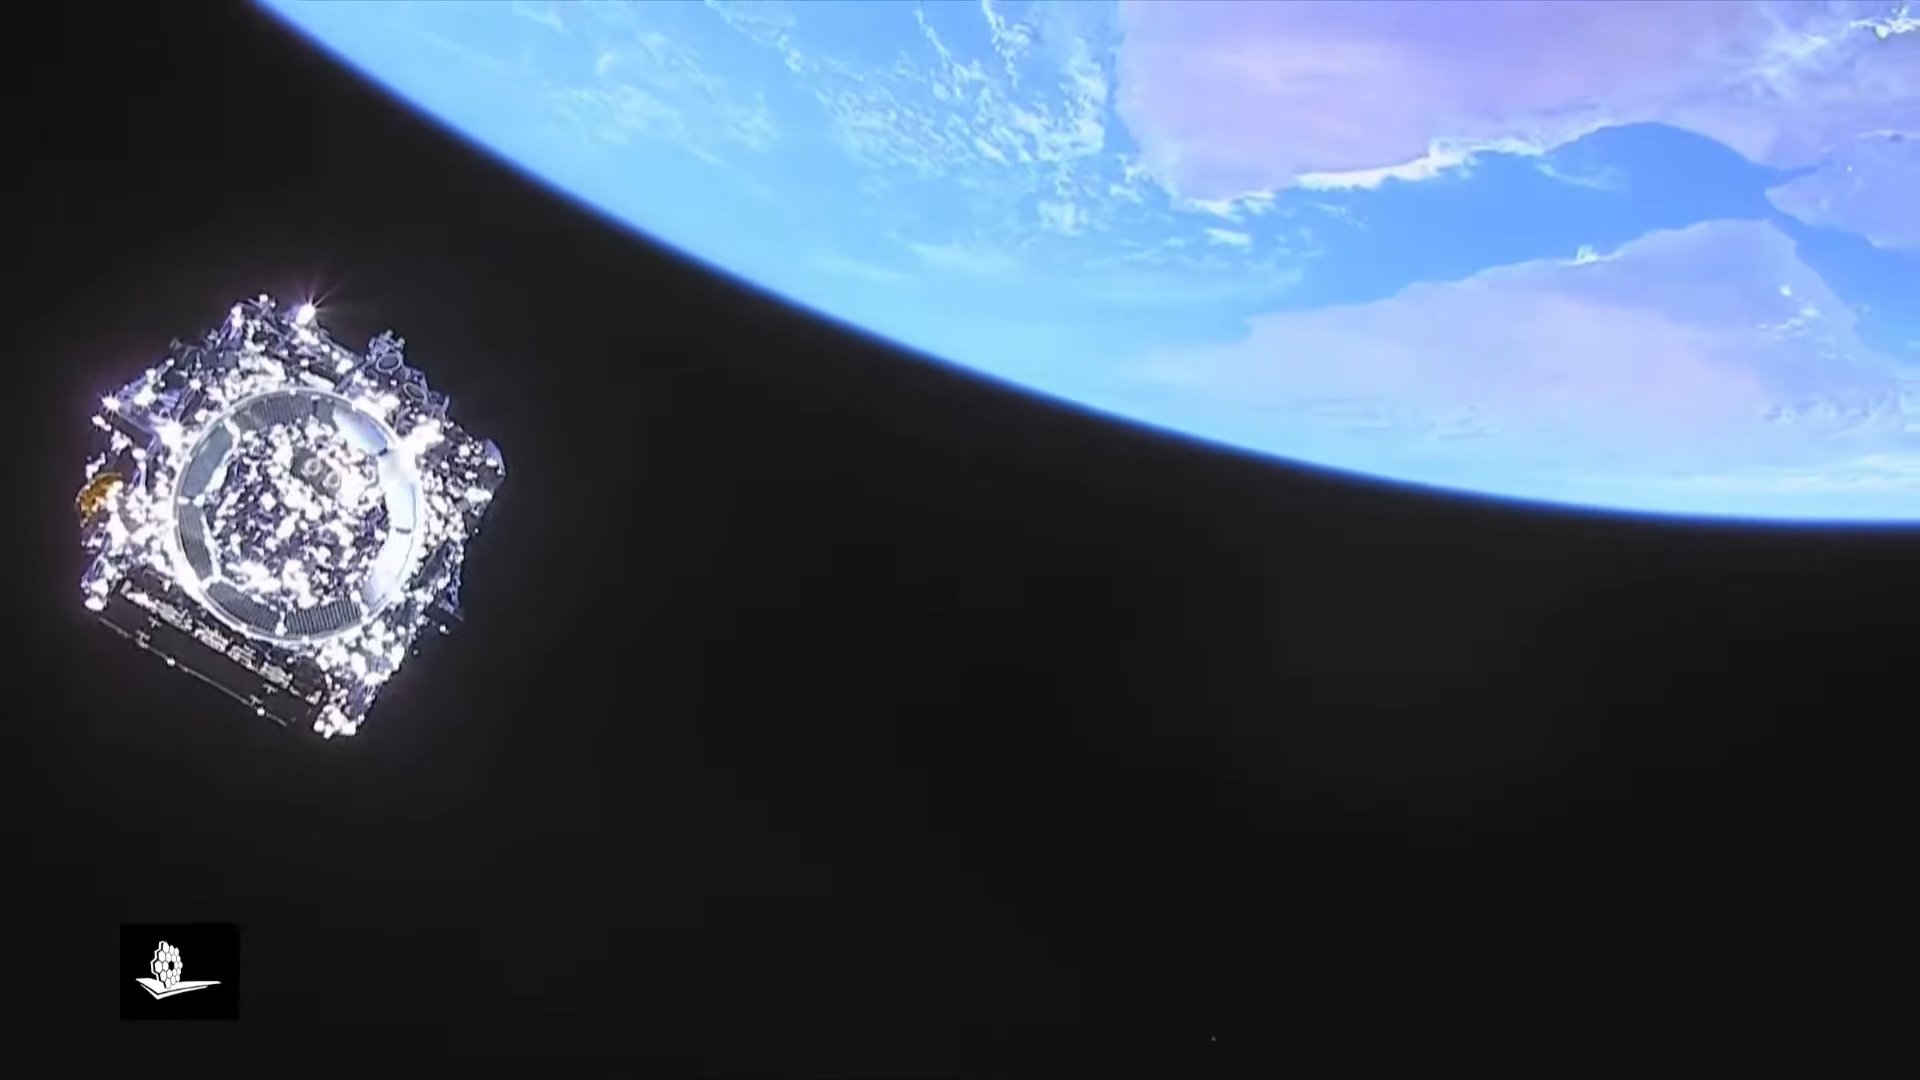 Espace : le bouclier thermique du télescope James Webb déployé